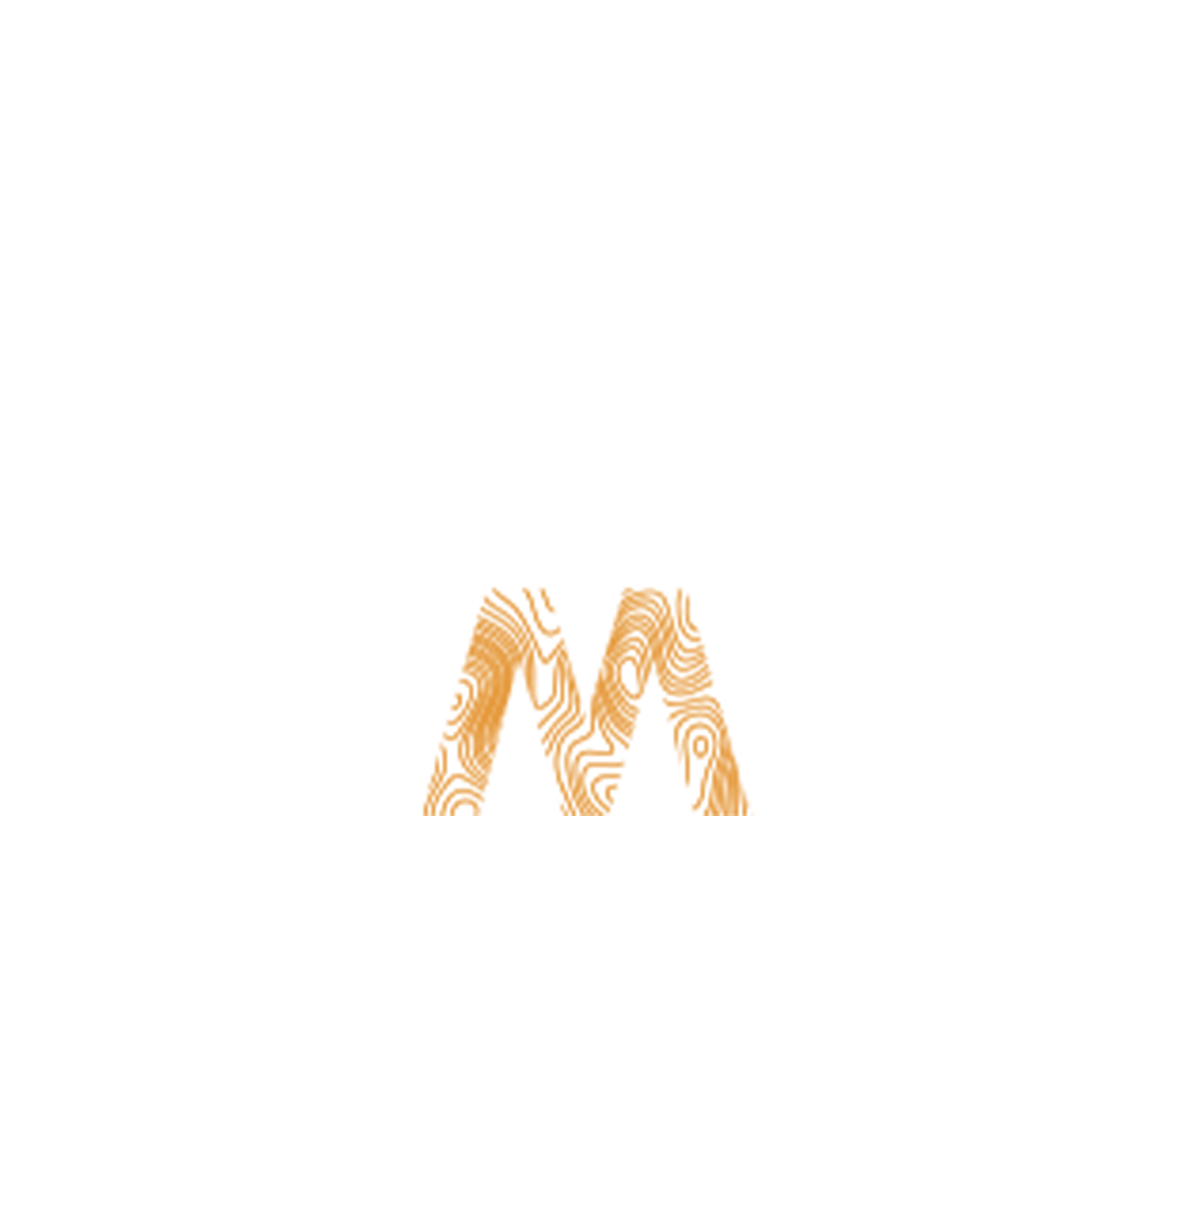 Warral Maldon